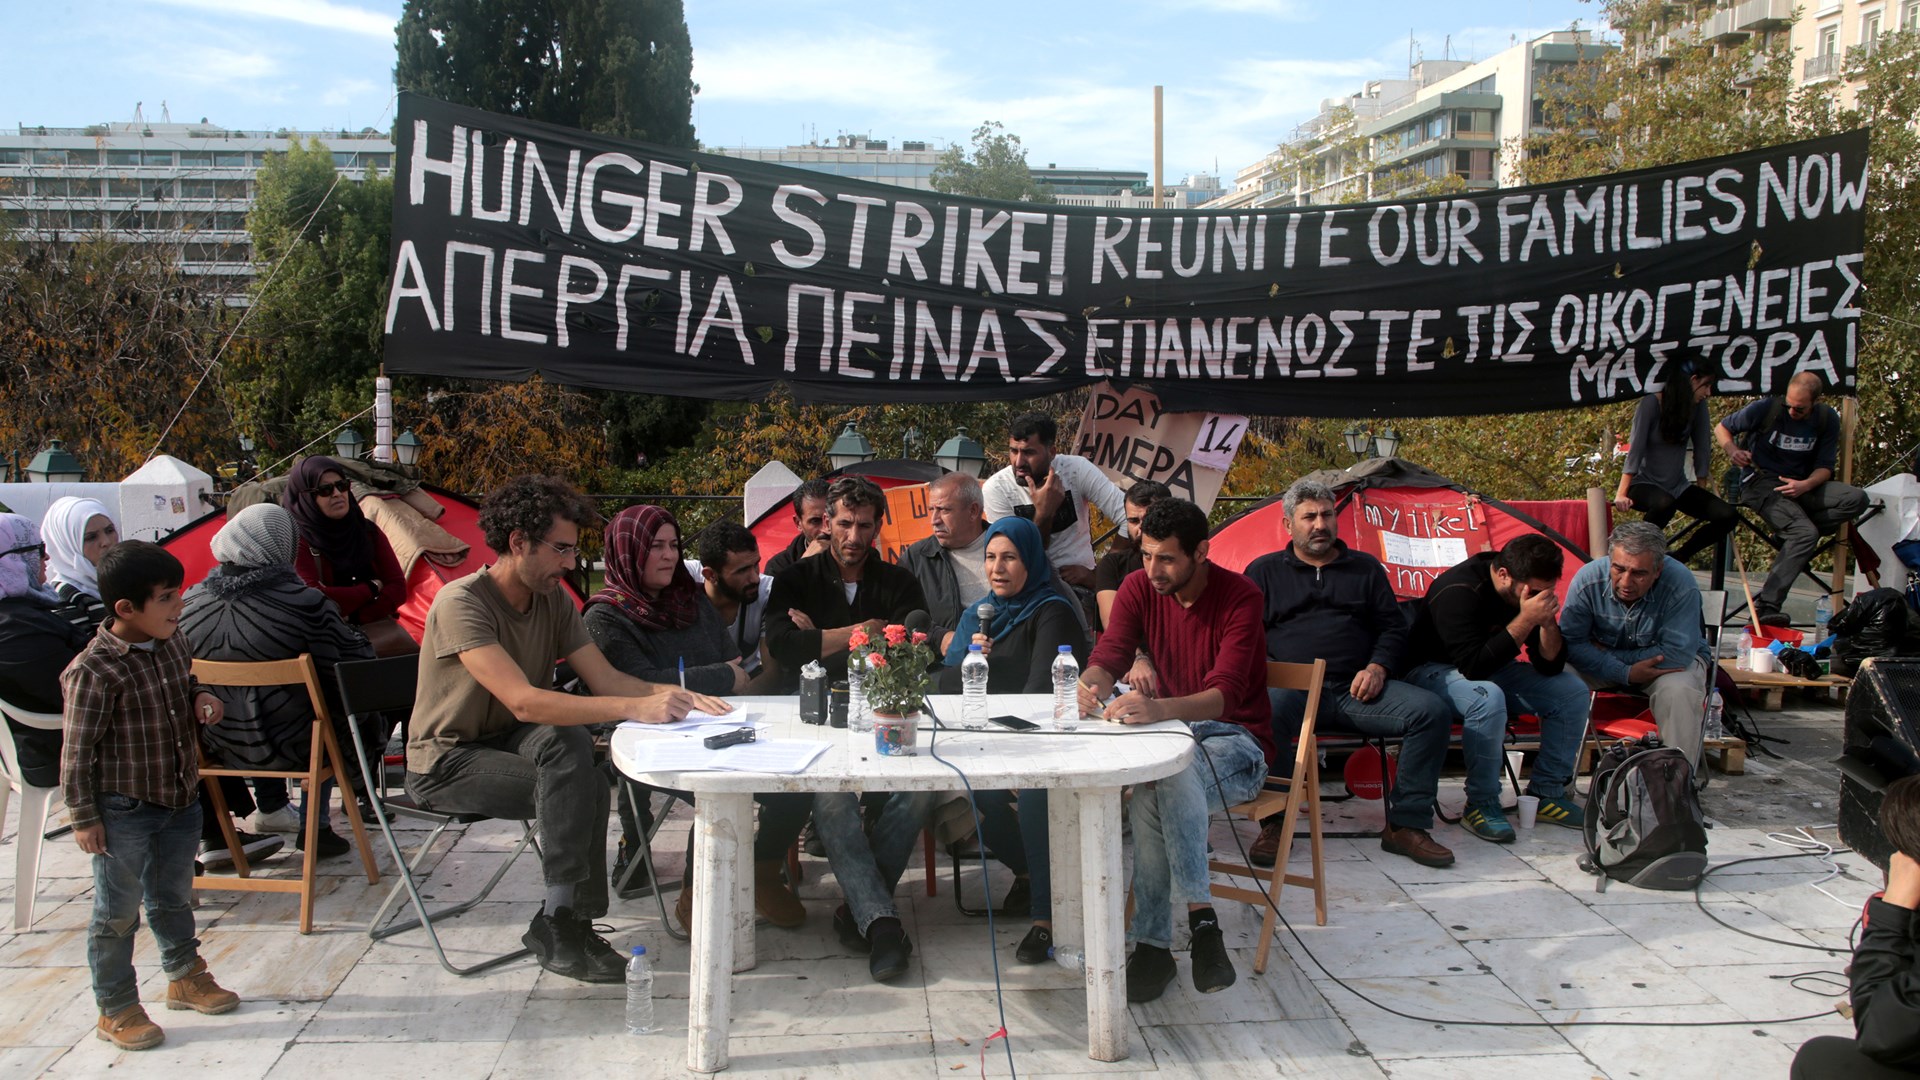 Σταμάτησαν την απεργία πείνας οι πρόσφυγες που είχαν κατασκηνώσει στο Σύνταγμα – ΦΩΤΟ